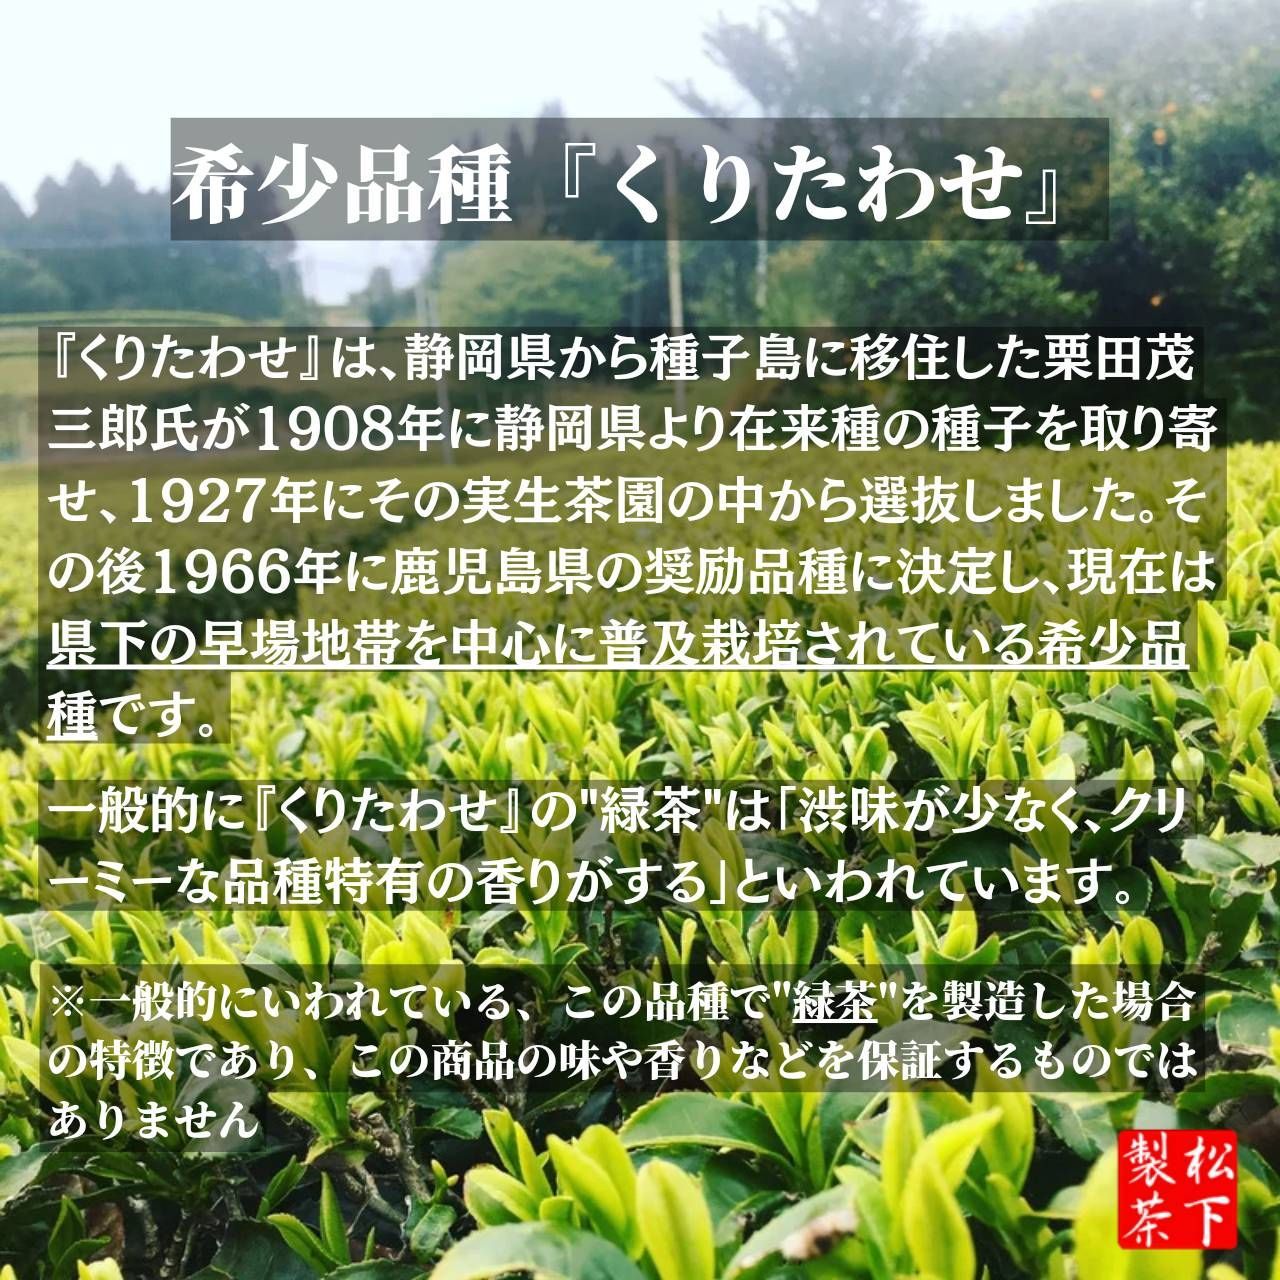 【2022年産/希少品種】種子島の有機緑茶『くりたわせ』 茶葉 100g-3